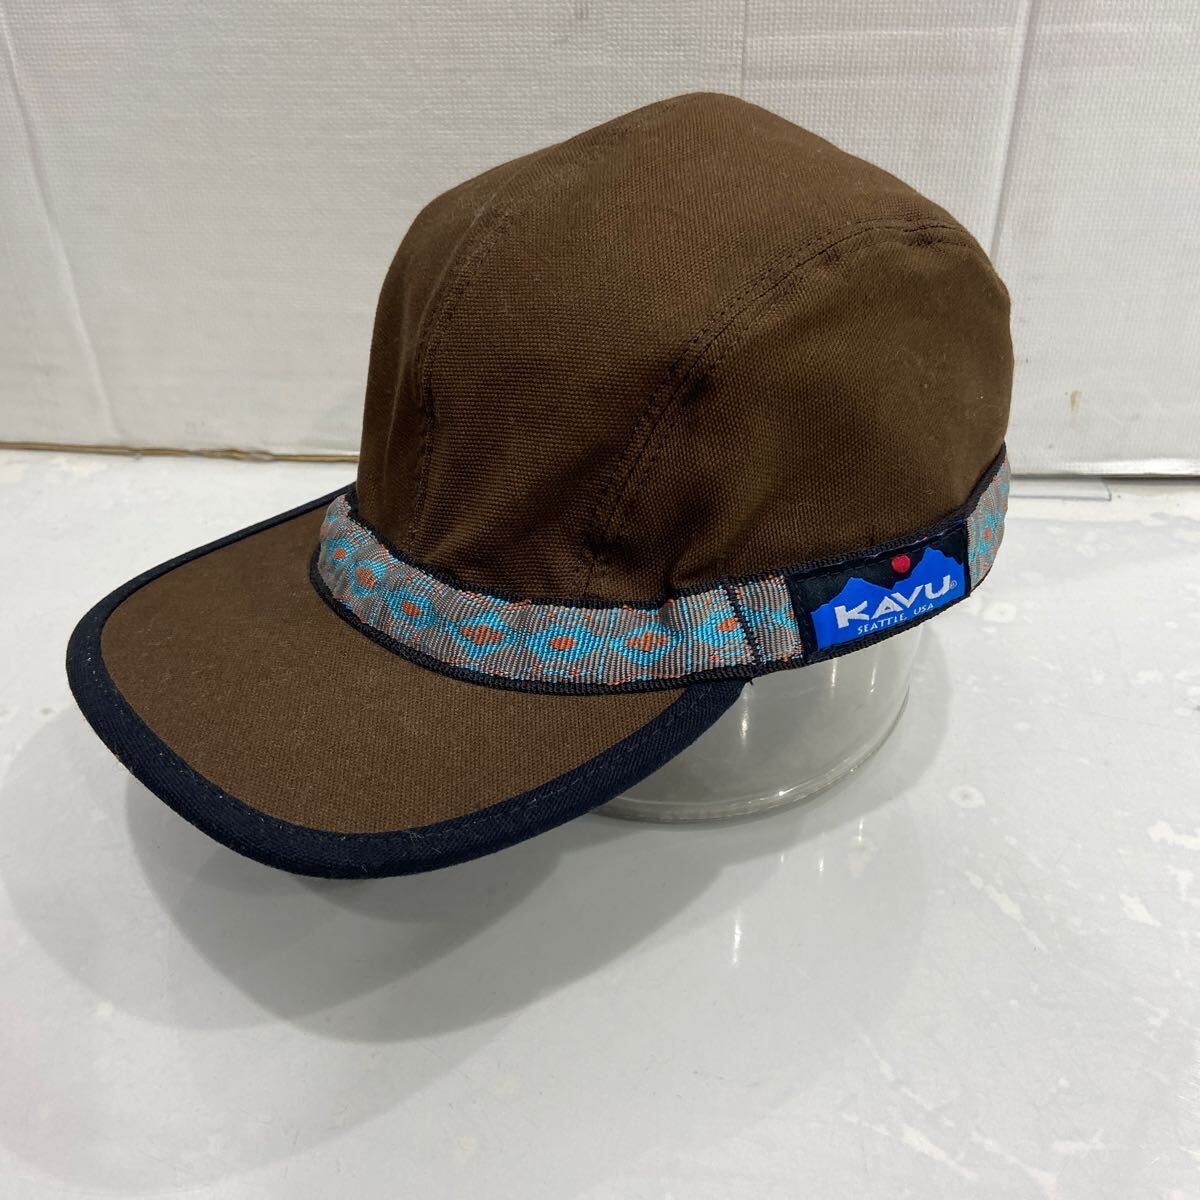 [KAVU Cub -] ремешок колпак Brown USA производства M 1167-1433-2 шляпа 2404oki K